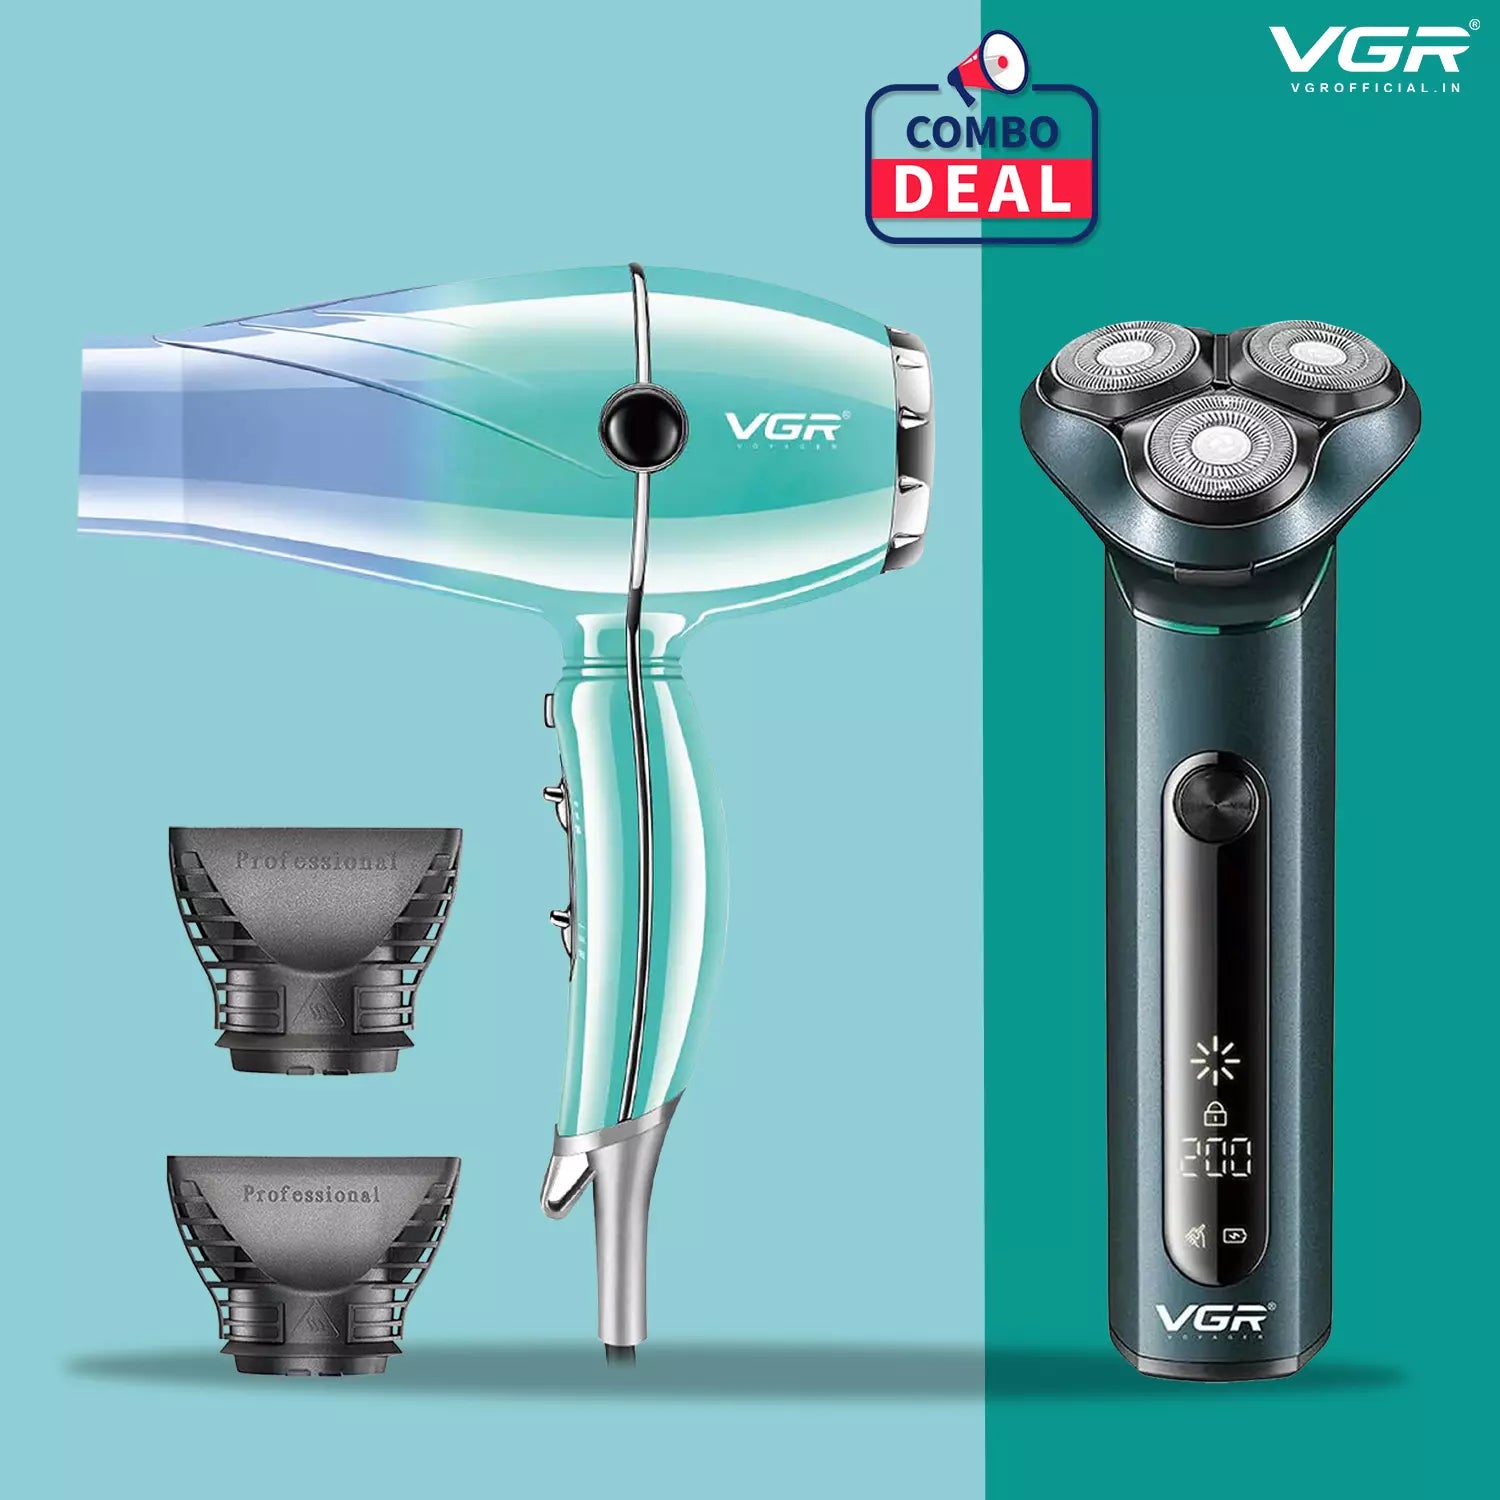 VGR V-310 Beard Shaver With VGR V-452 Hair Dryer Combo Deal